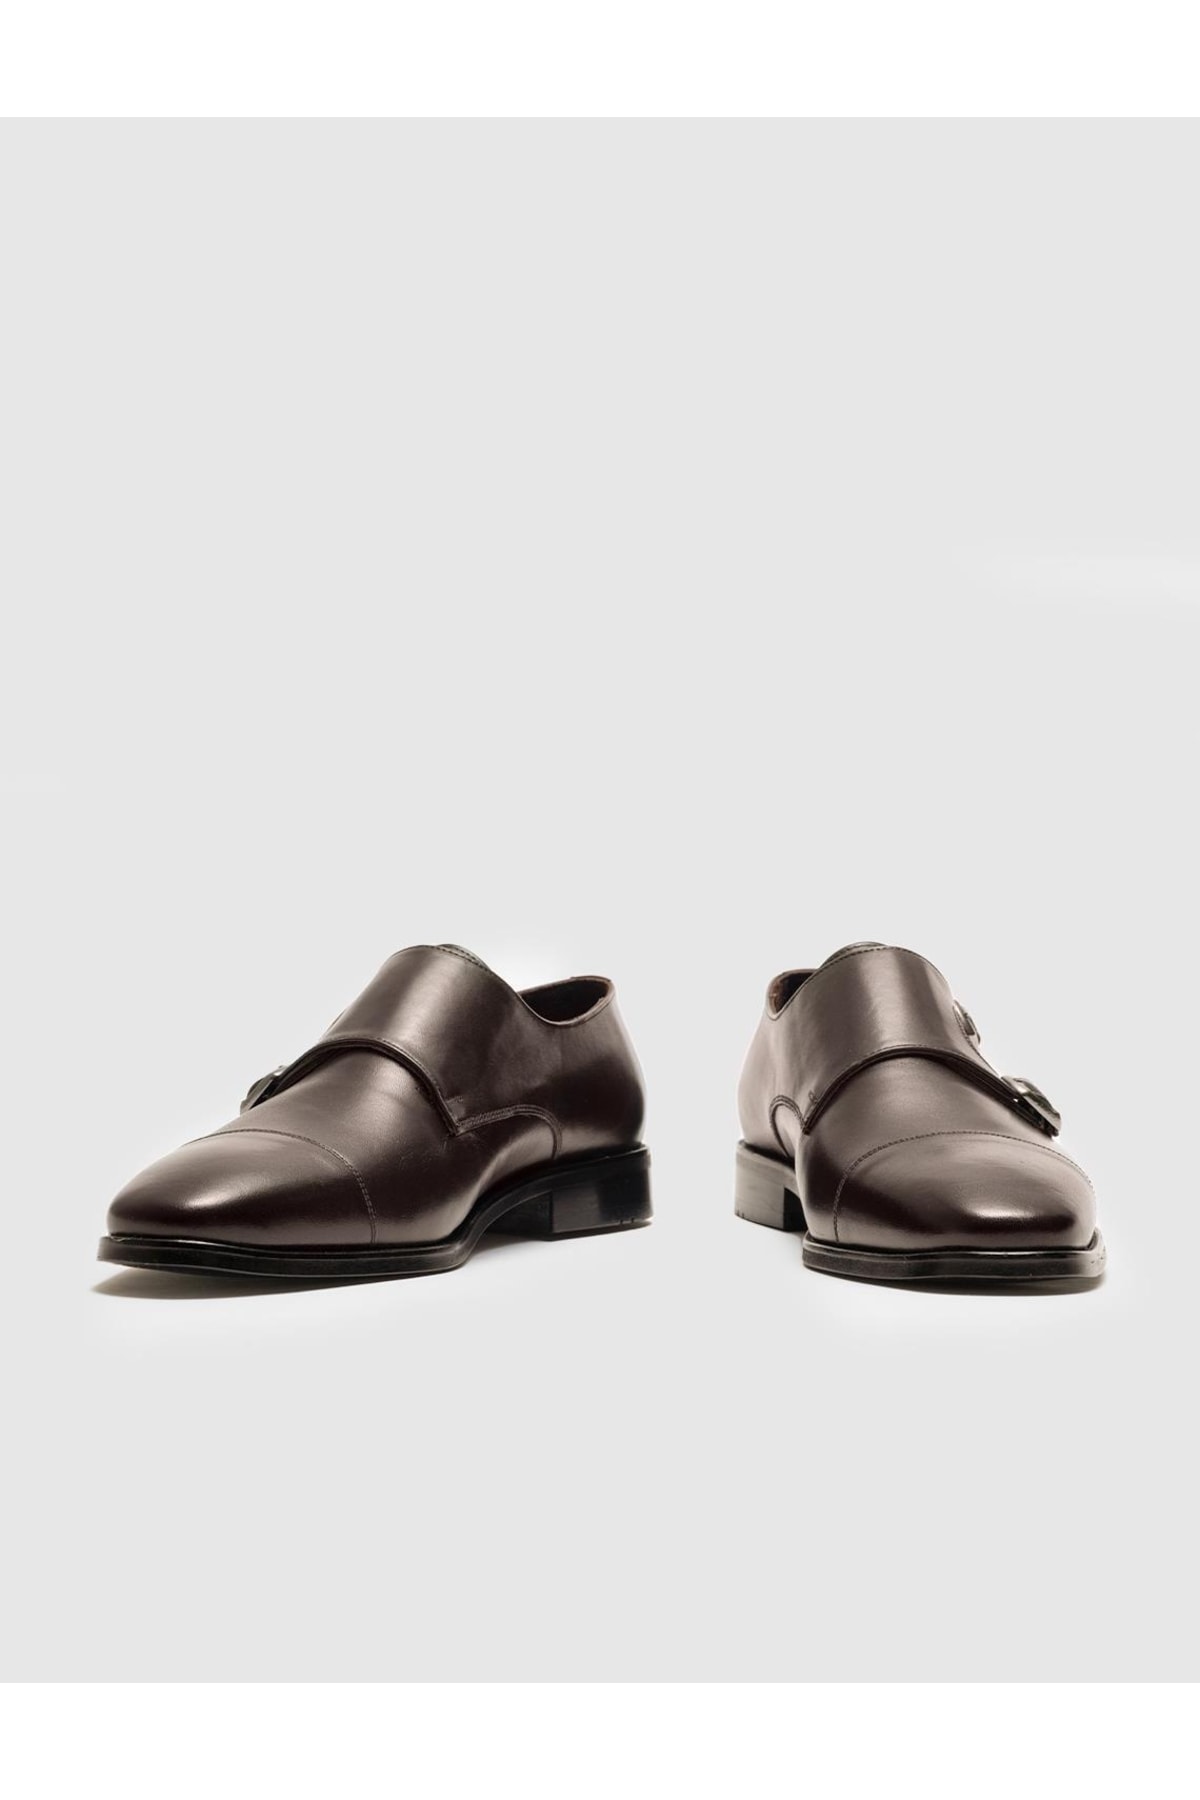 Cabani Hakiki Deri Kahverengi Çift Tokalı Erkek Klasik Ayakkabı ZN8910